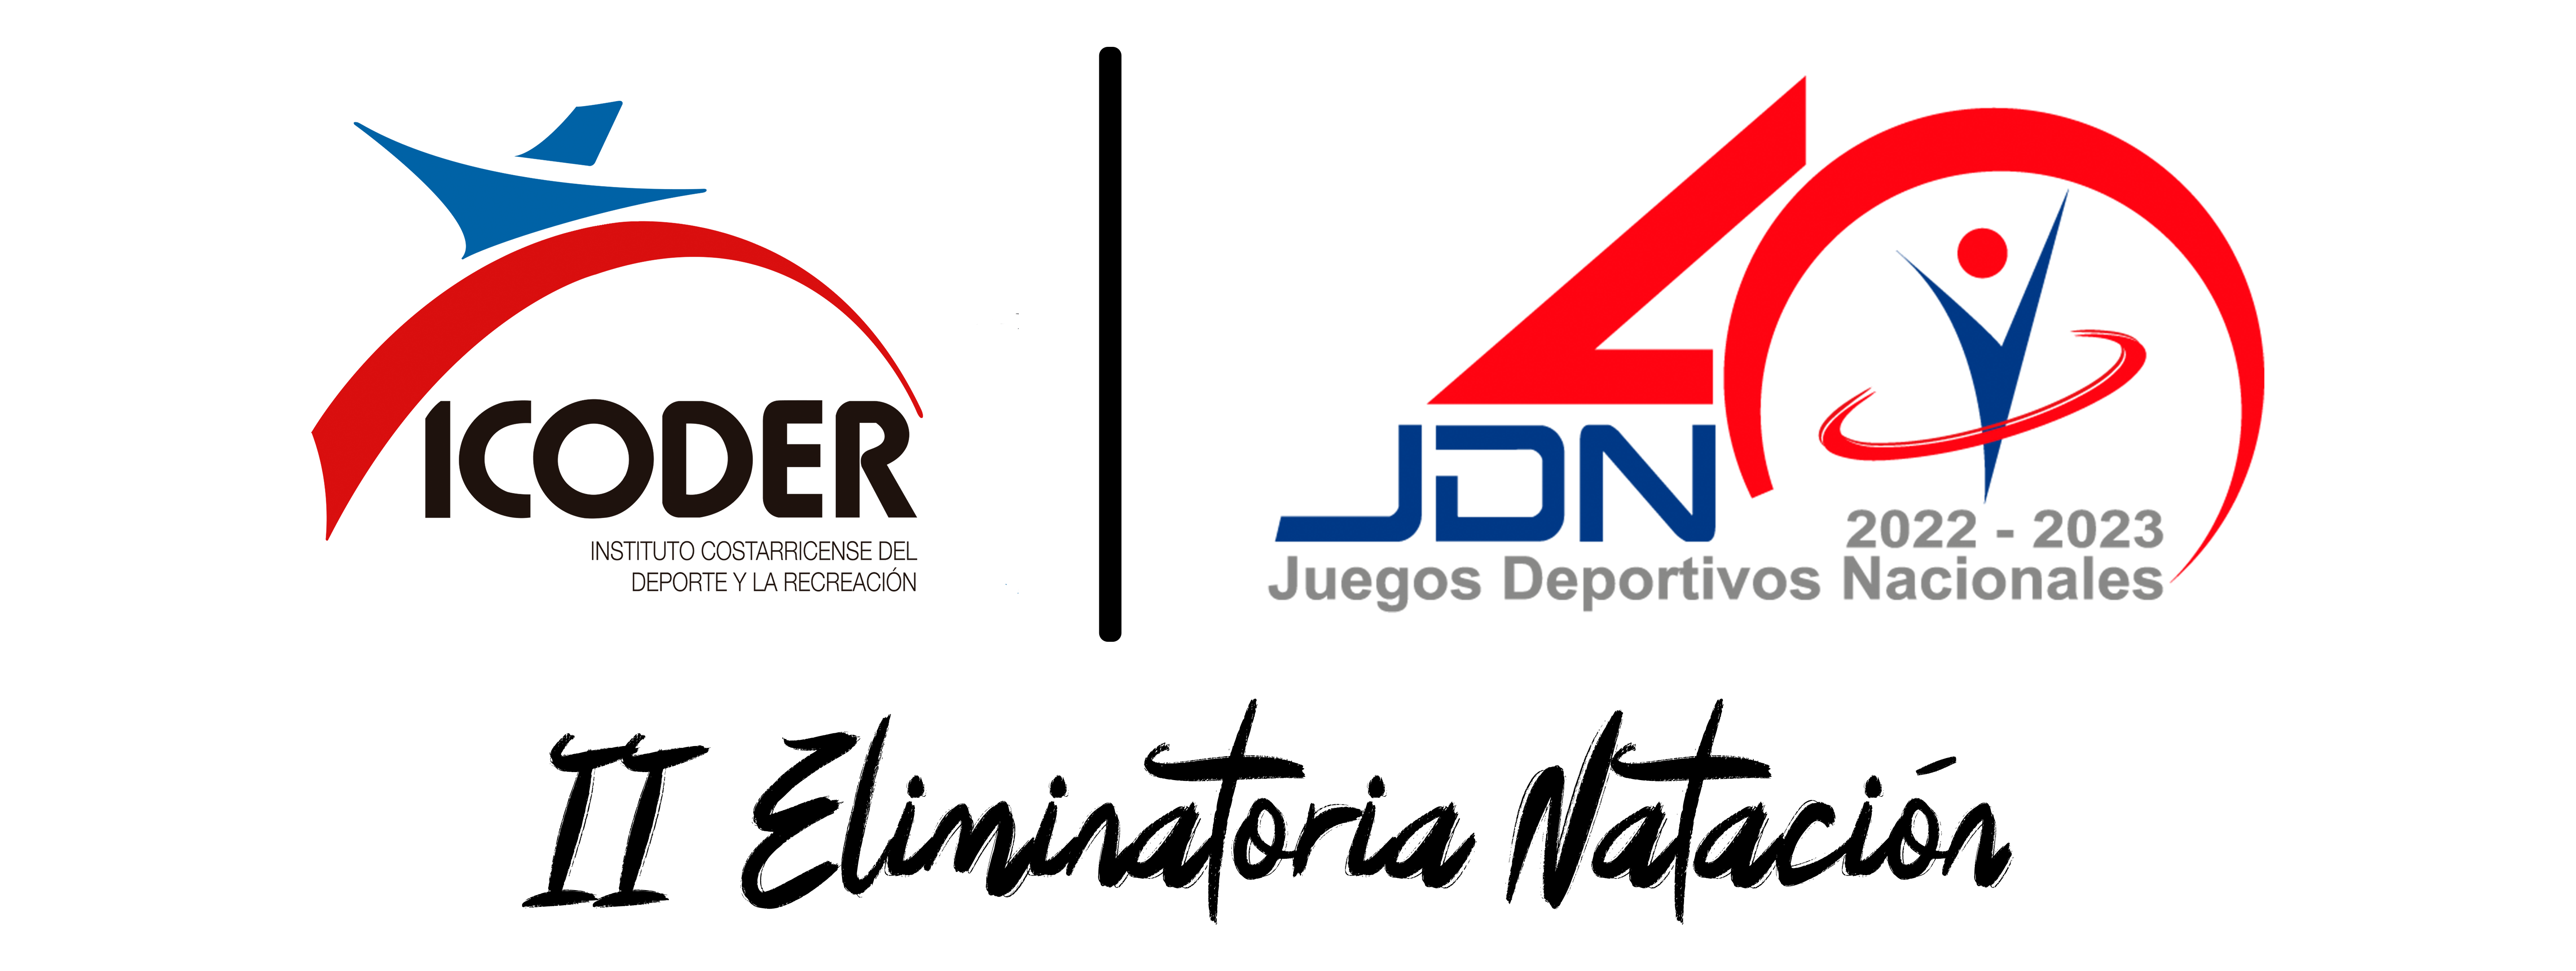 ¡AL AGUA! SEGUNDA ELIMINATORIA DE NATACIÓN RUMBO A JUEGOS #jdnicoder20222023